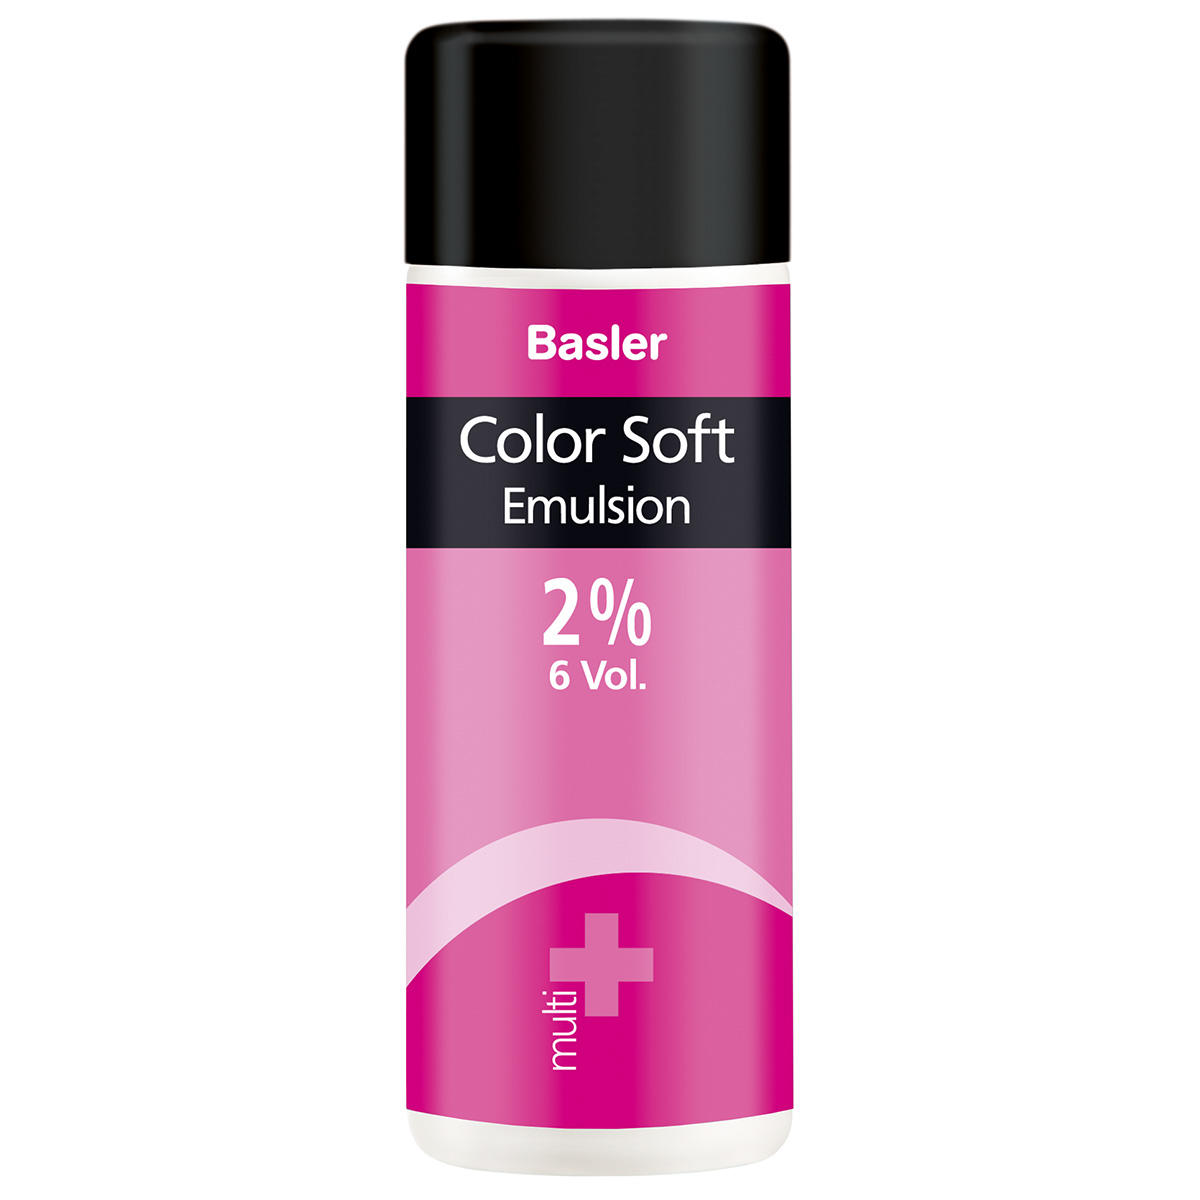 Basler Color Soft multi Emulsion 2 % - 7 Vol., fles 200 ml - 1